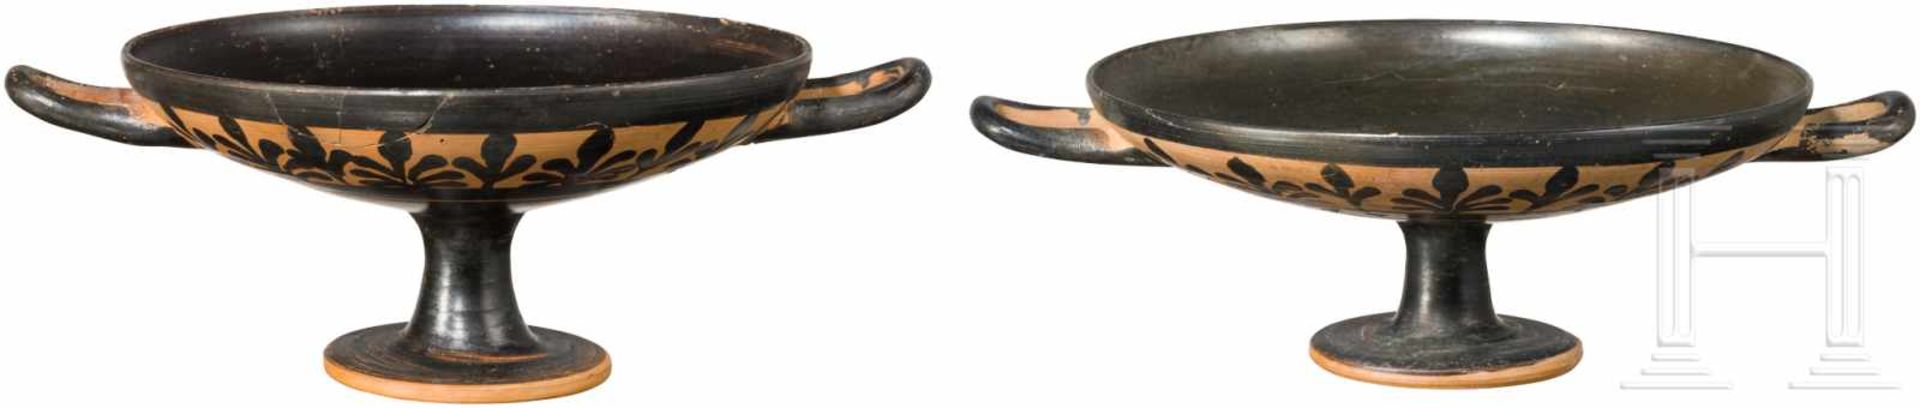 Zwei attische Trinkschalen, Griechenland, 4. Jhdt. v. Chr.Schwarz gefirnisste Trinkschalen. Innen je